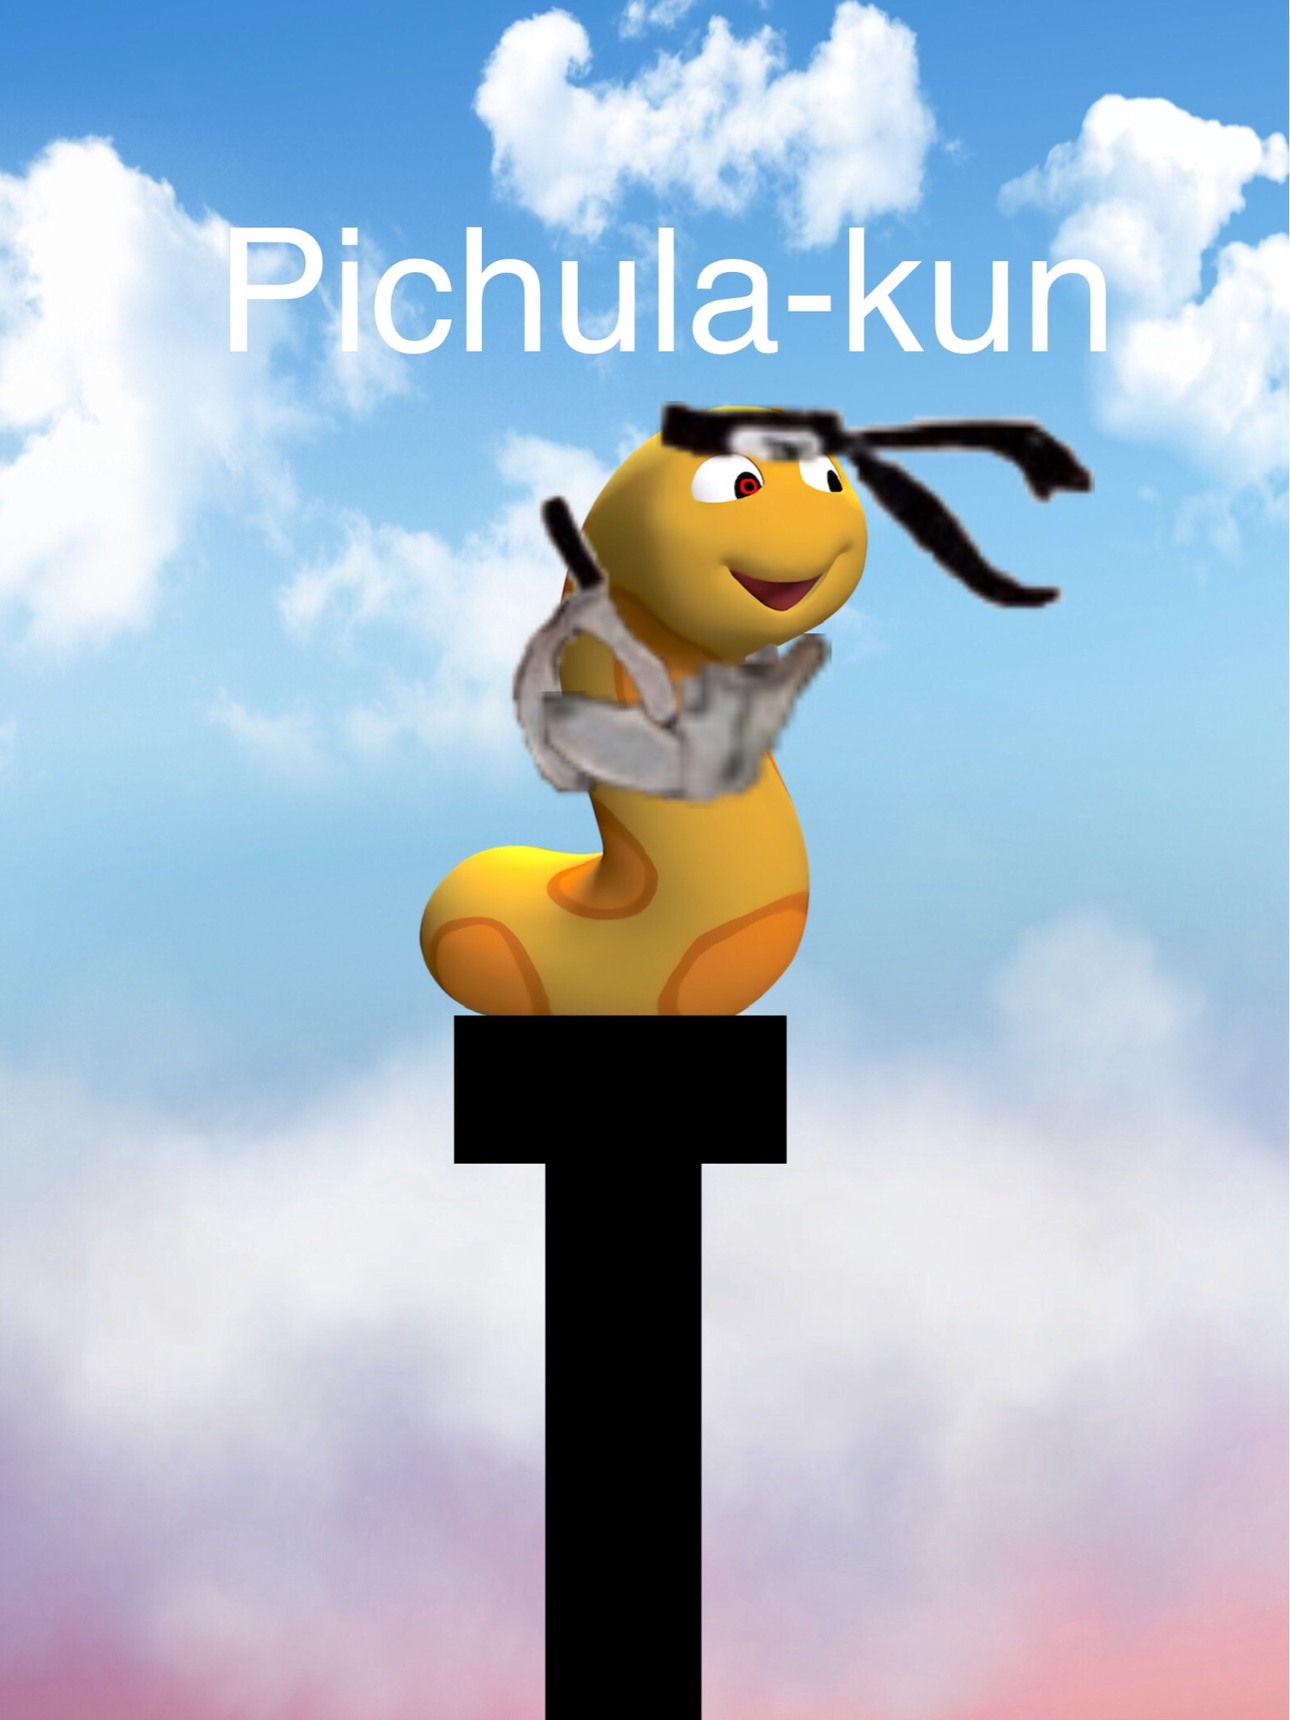 pichula-kun - meme